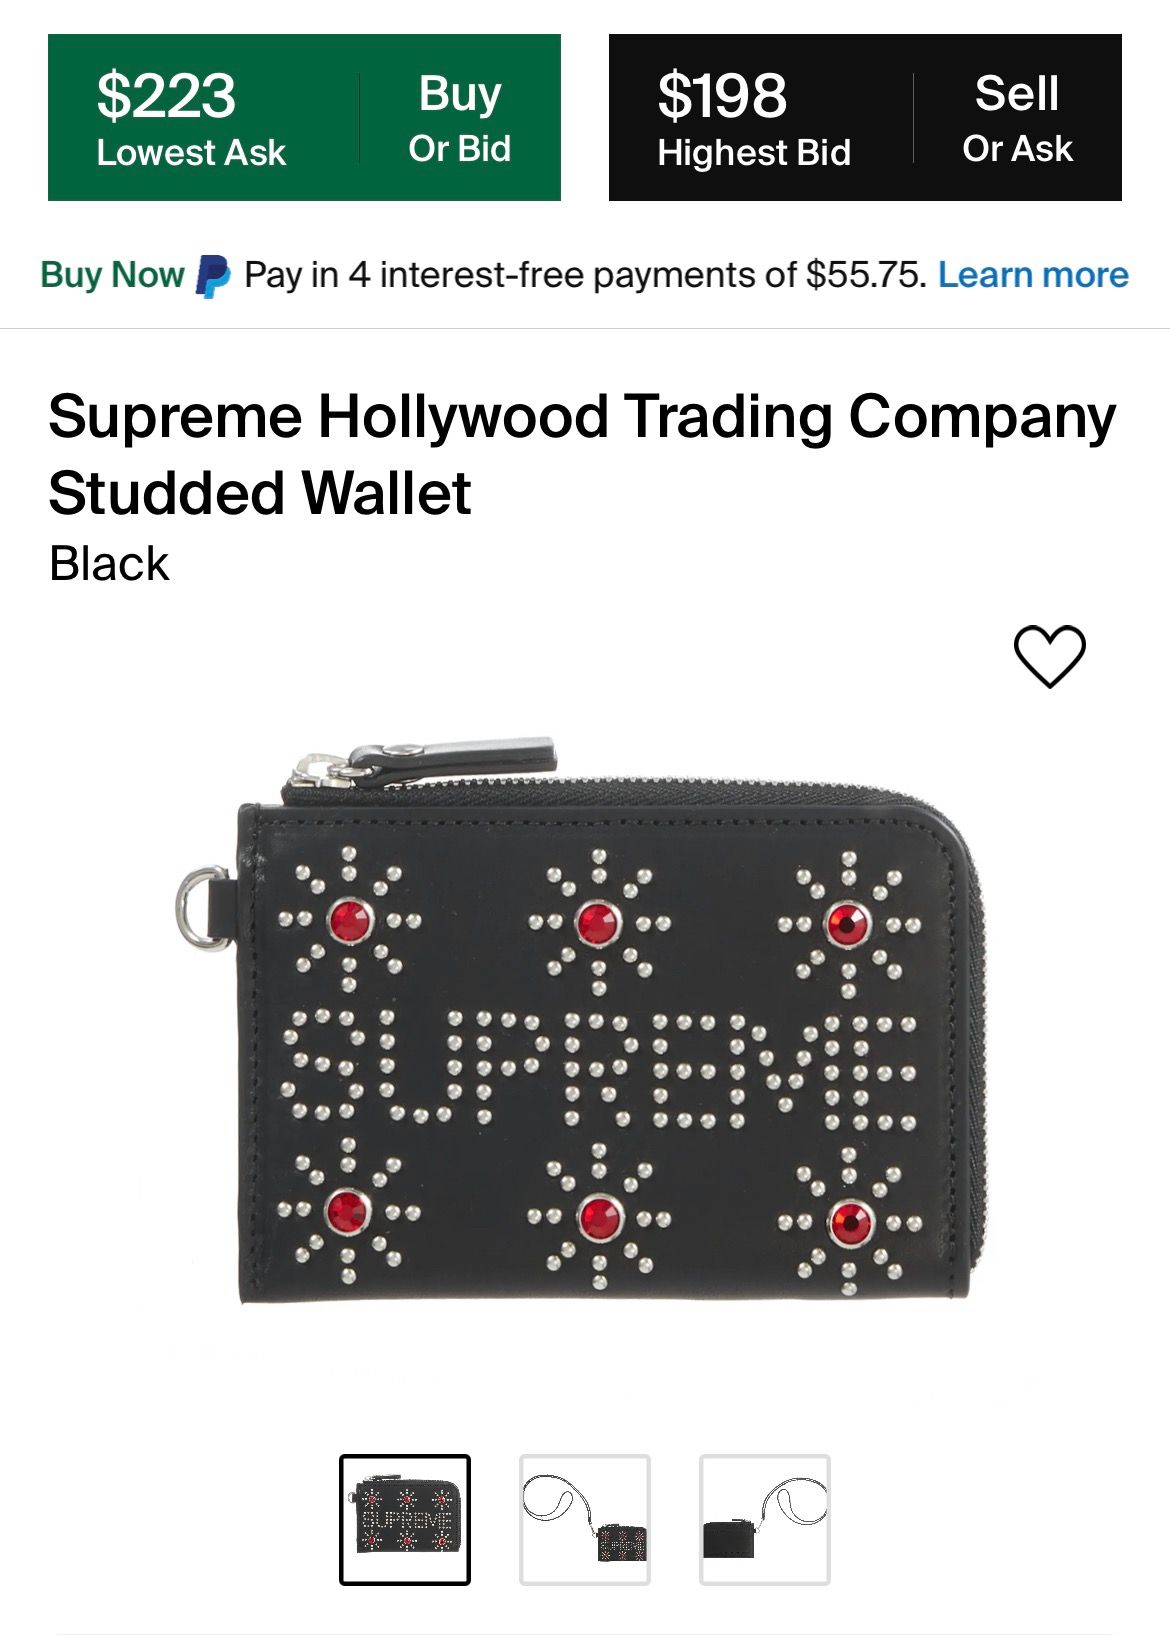 Supreme®/HTC Studded Wallet Black-